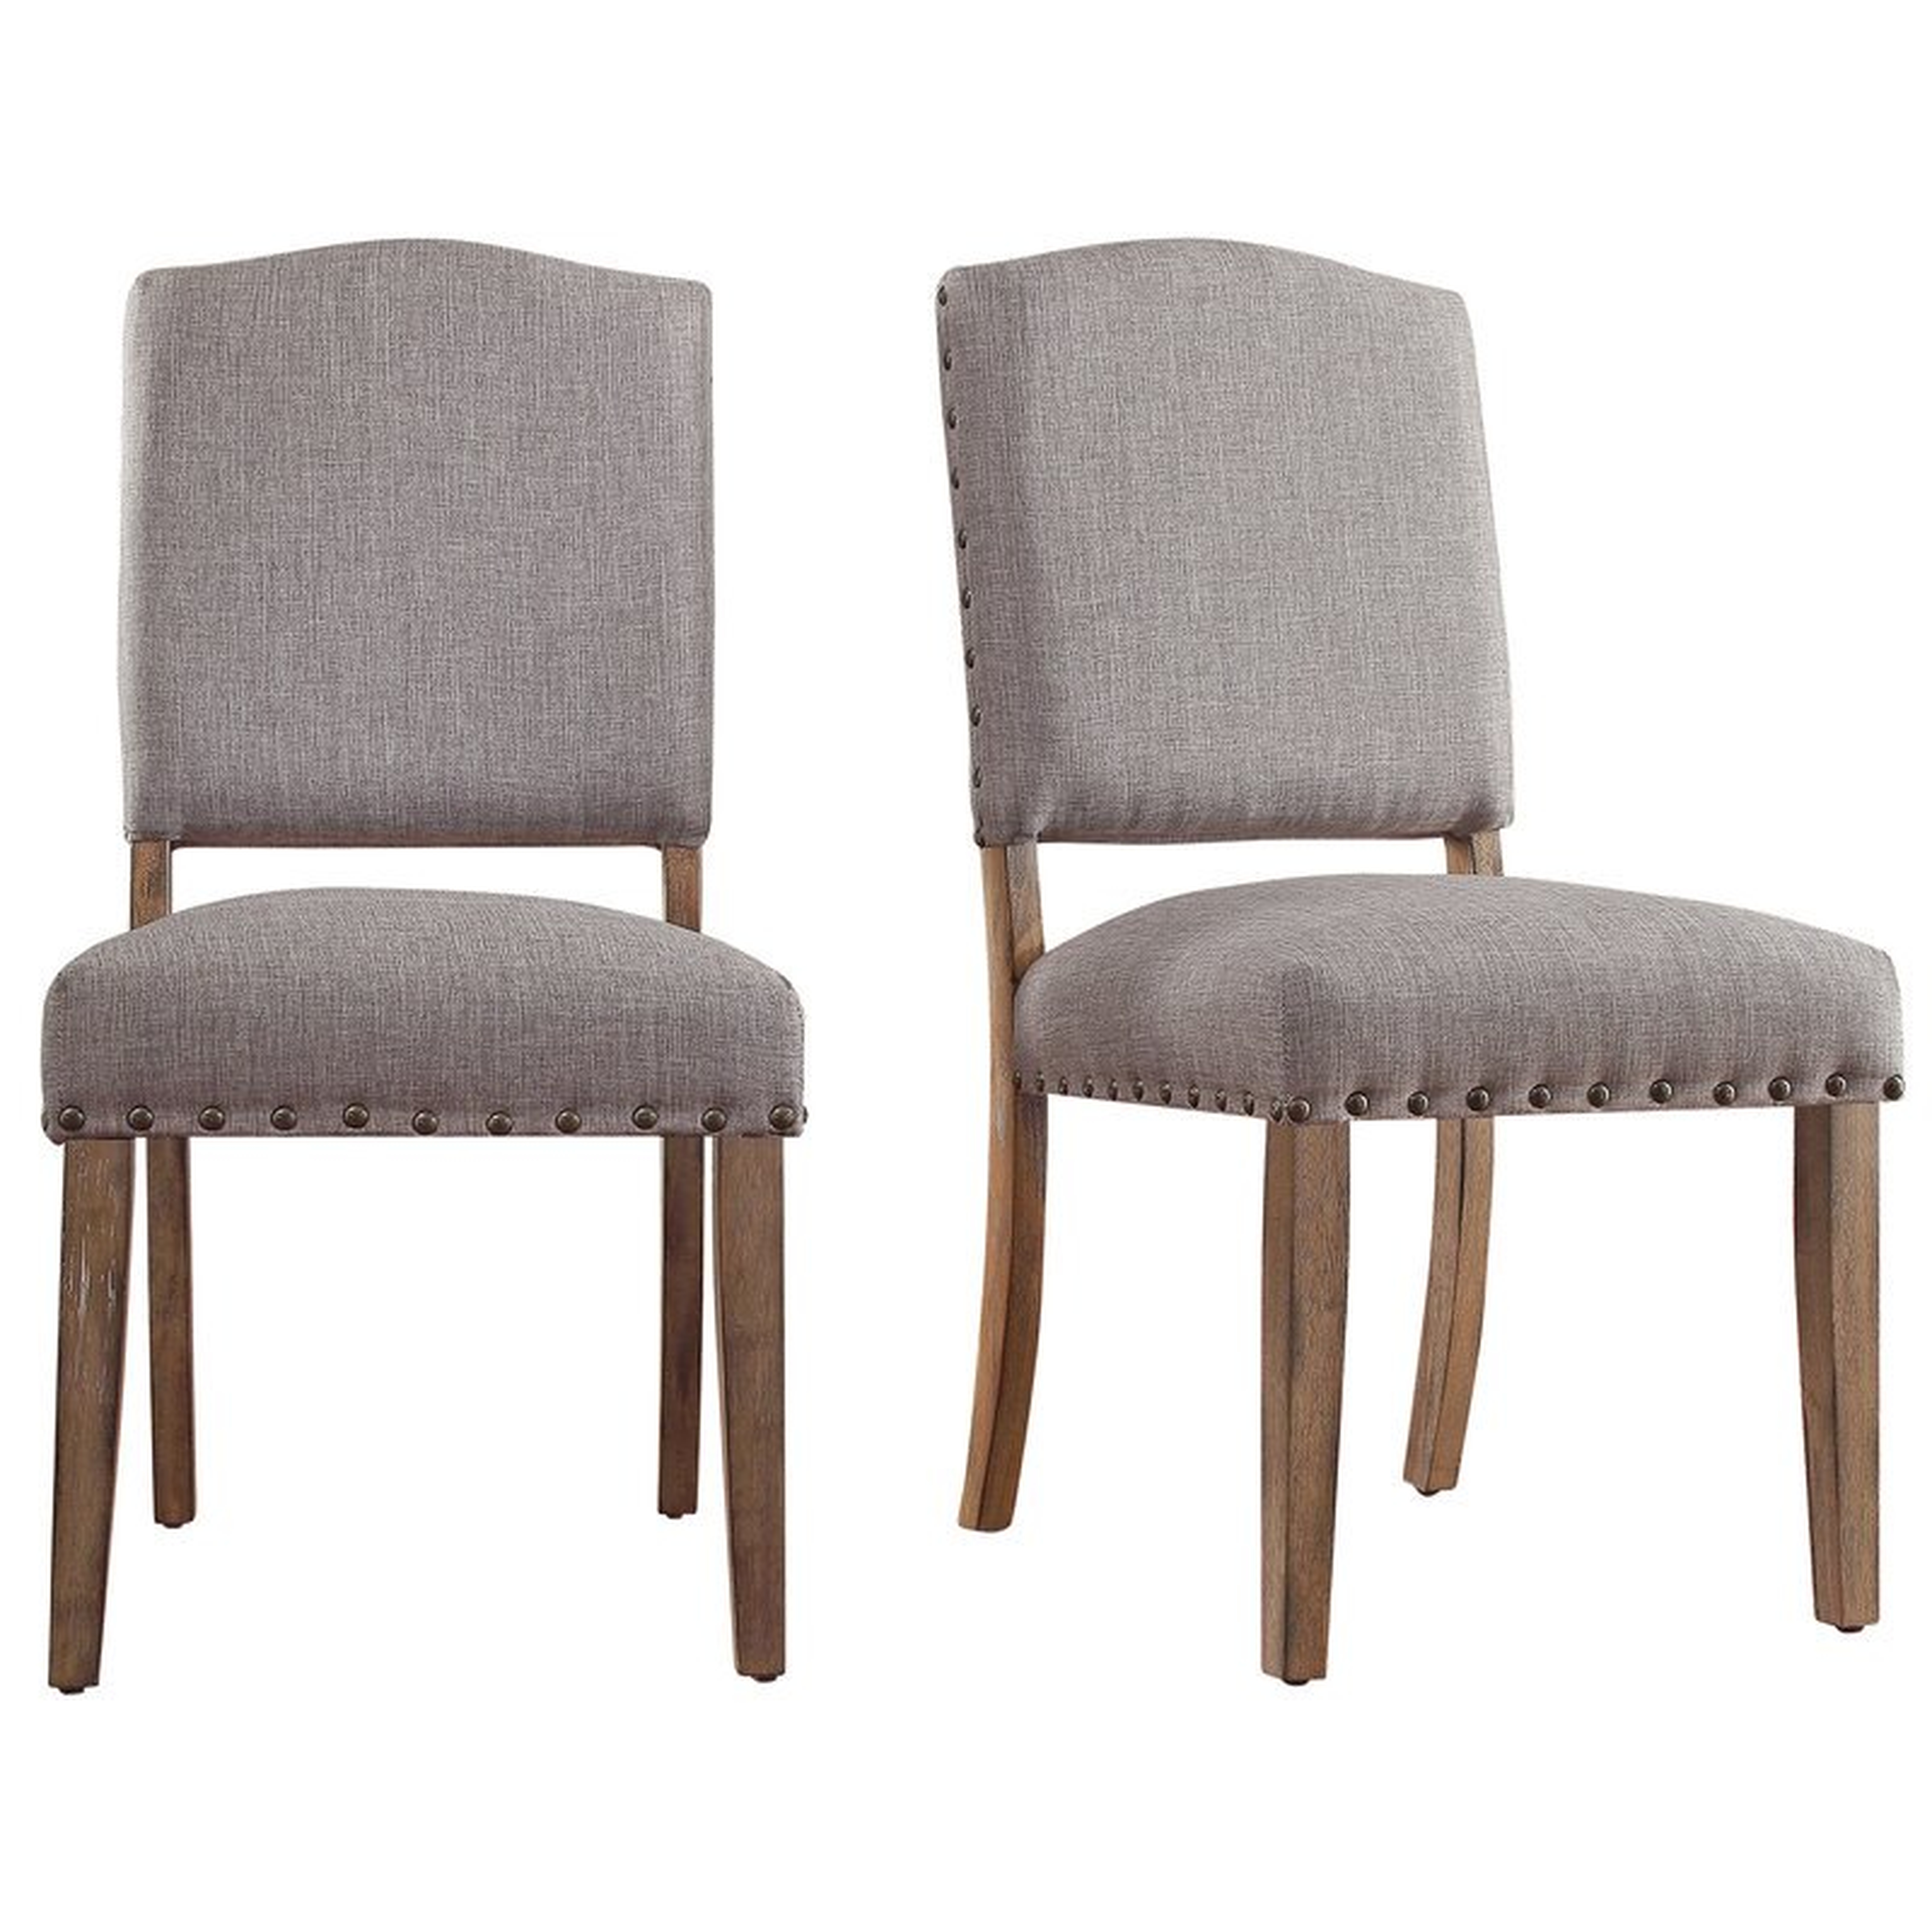 Fairchild Upholstered Dining Chair (Set of 2) - Birch Lane